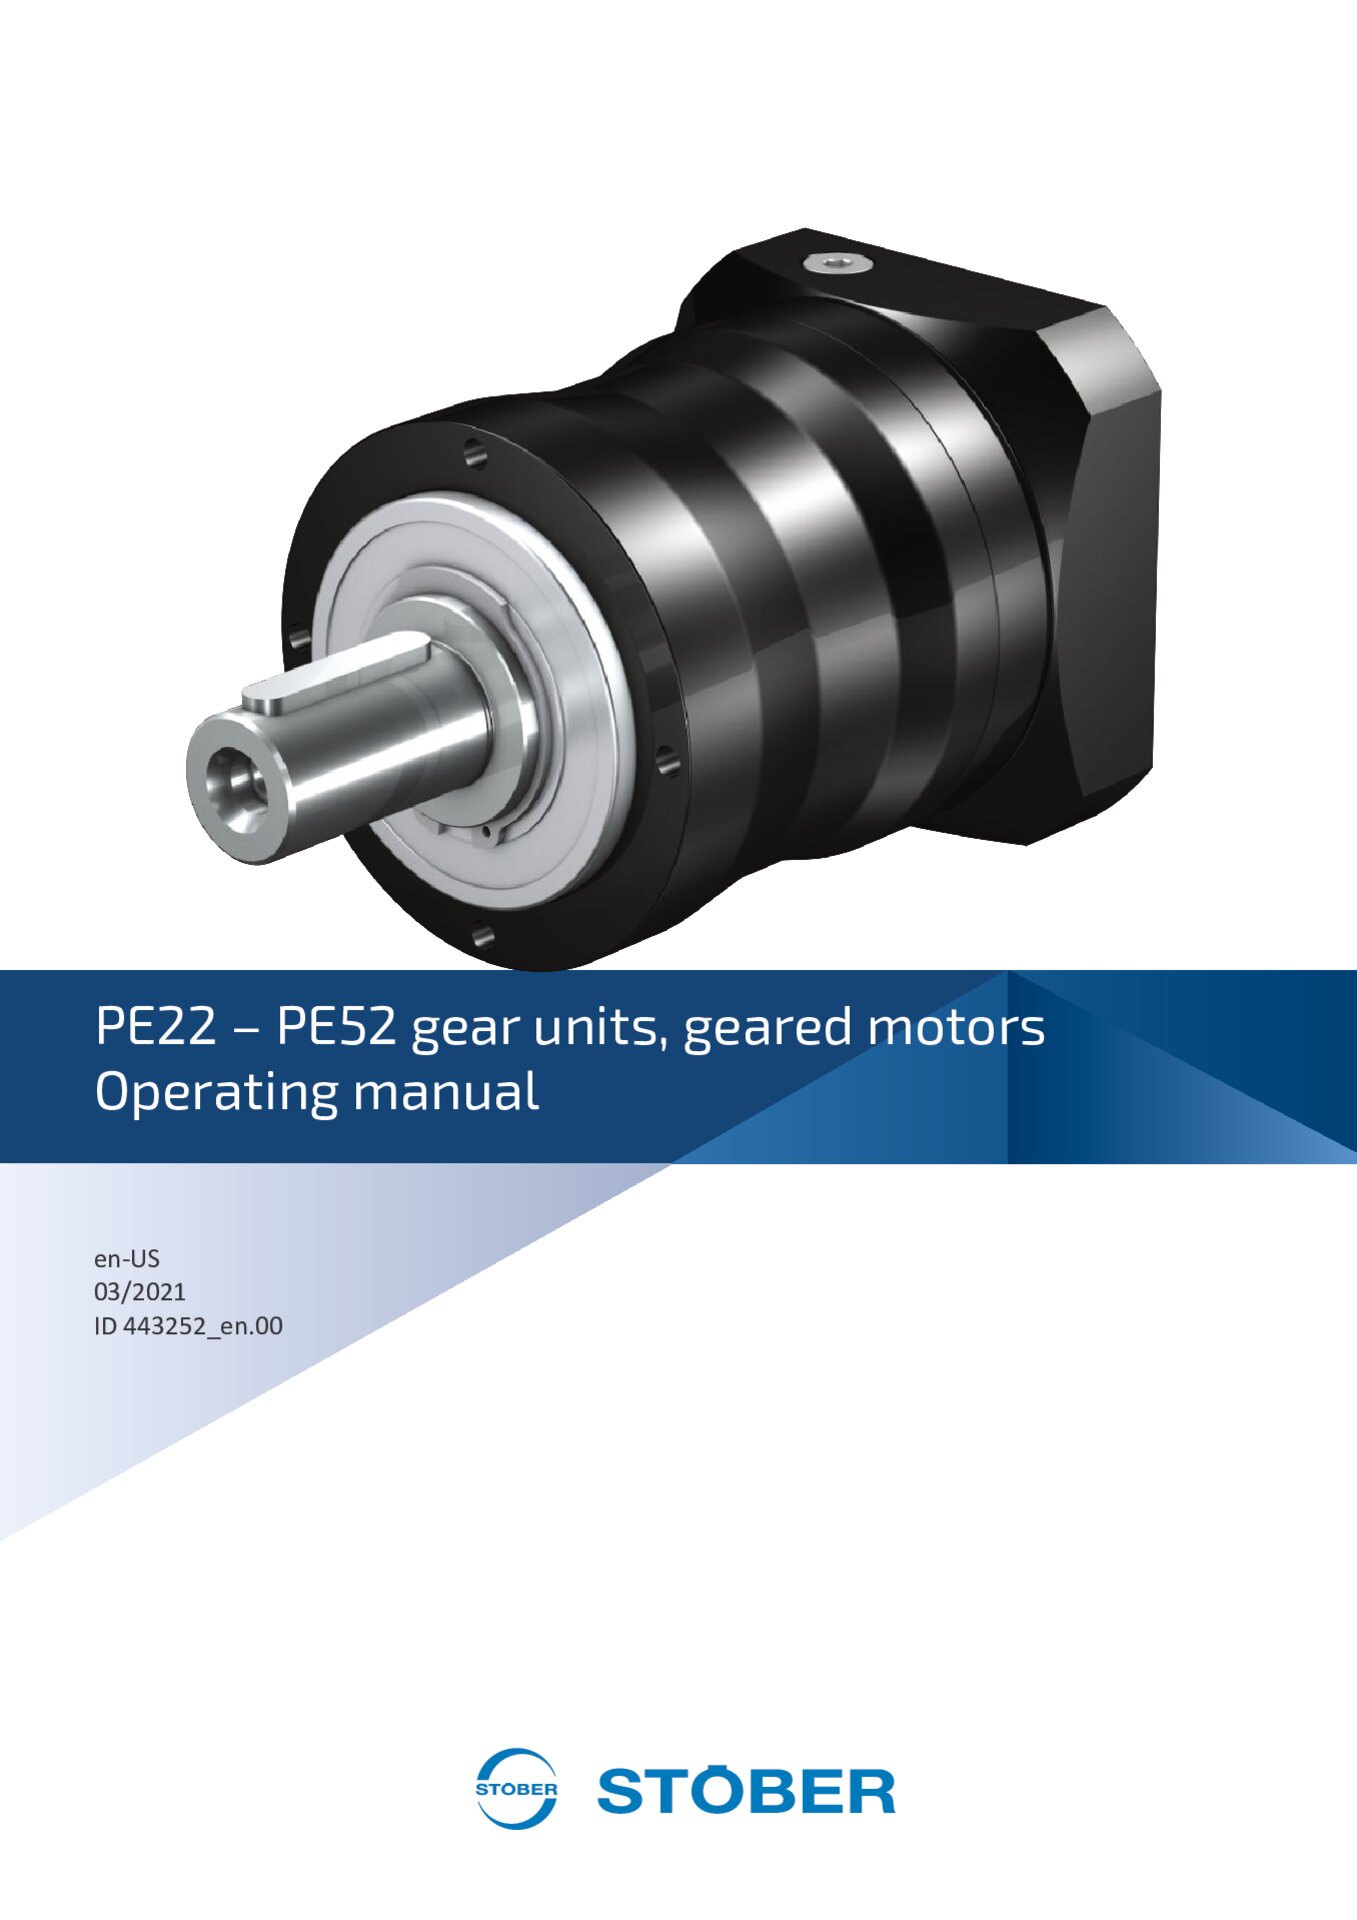 Operating manual PE22 - PE52 gear units and geared motors